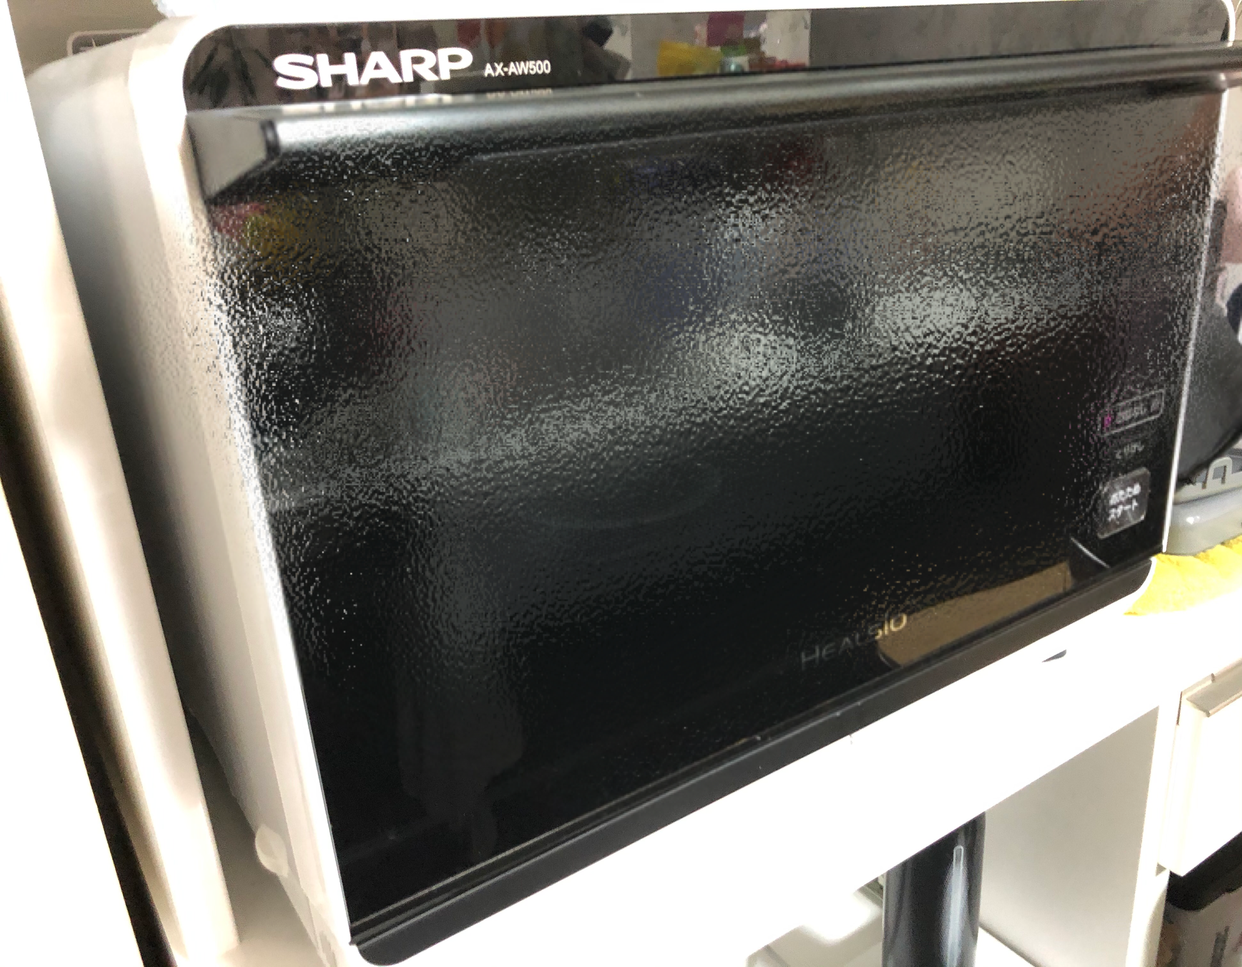 SHARP(シャープ) ウォーターオーブン ヘルシオ AX-AW500に関するみこしばさんの口コミ画像1